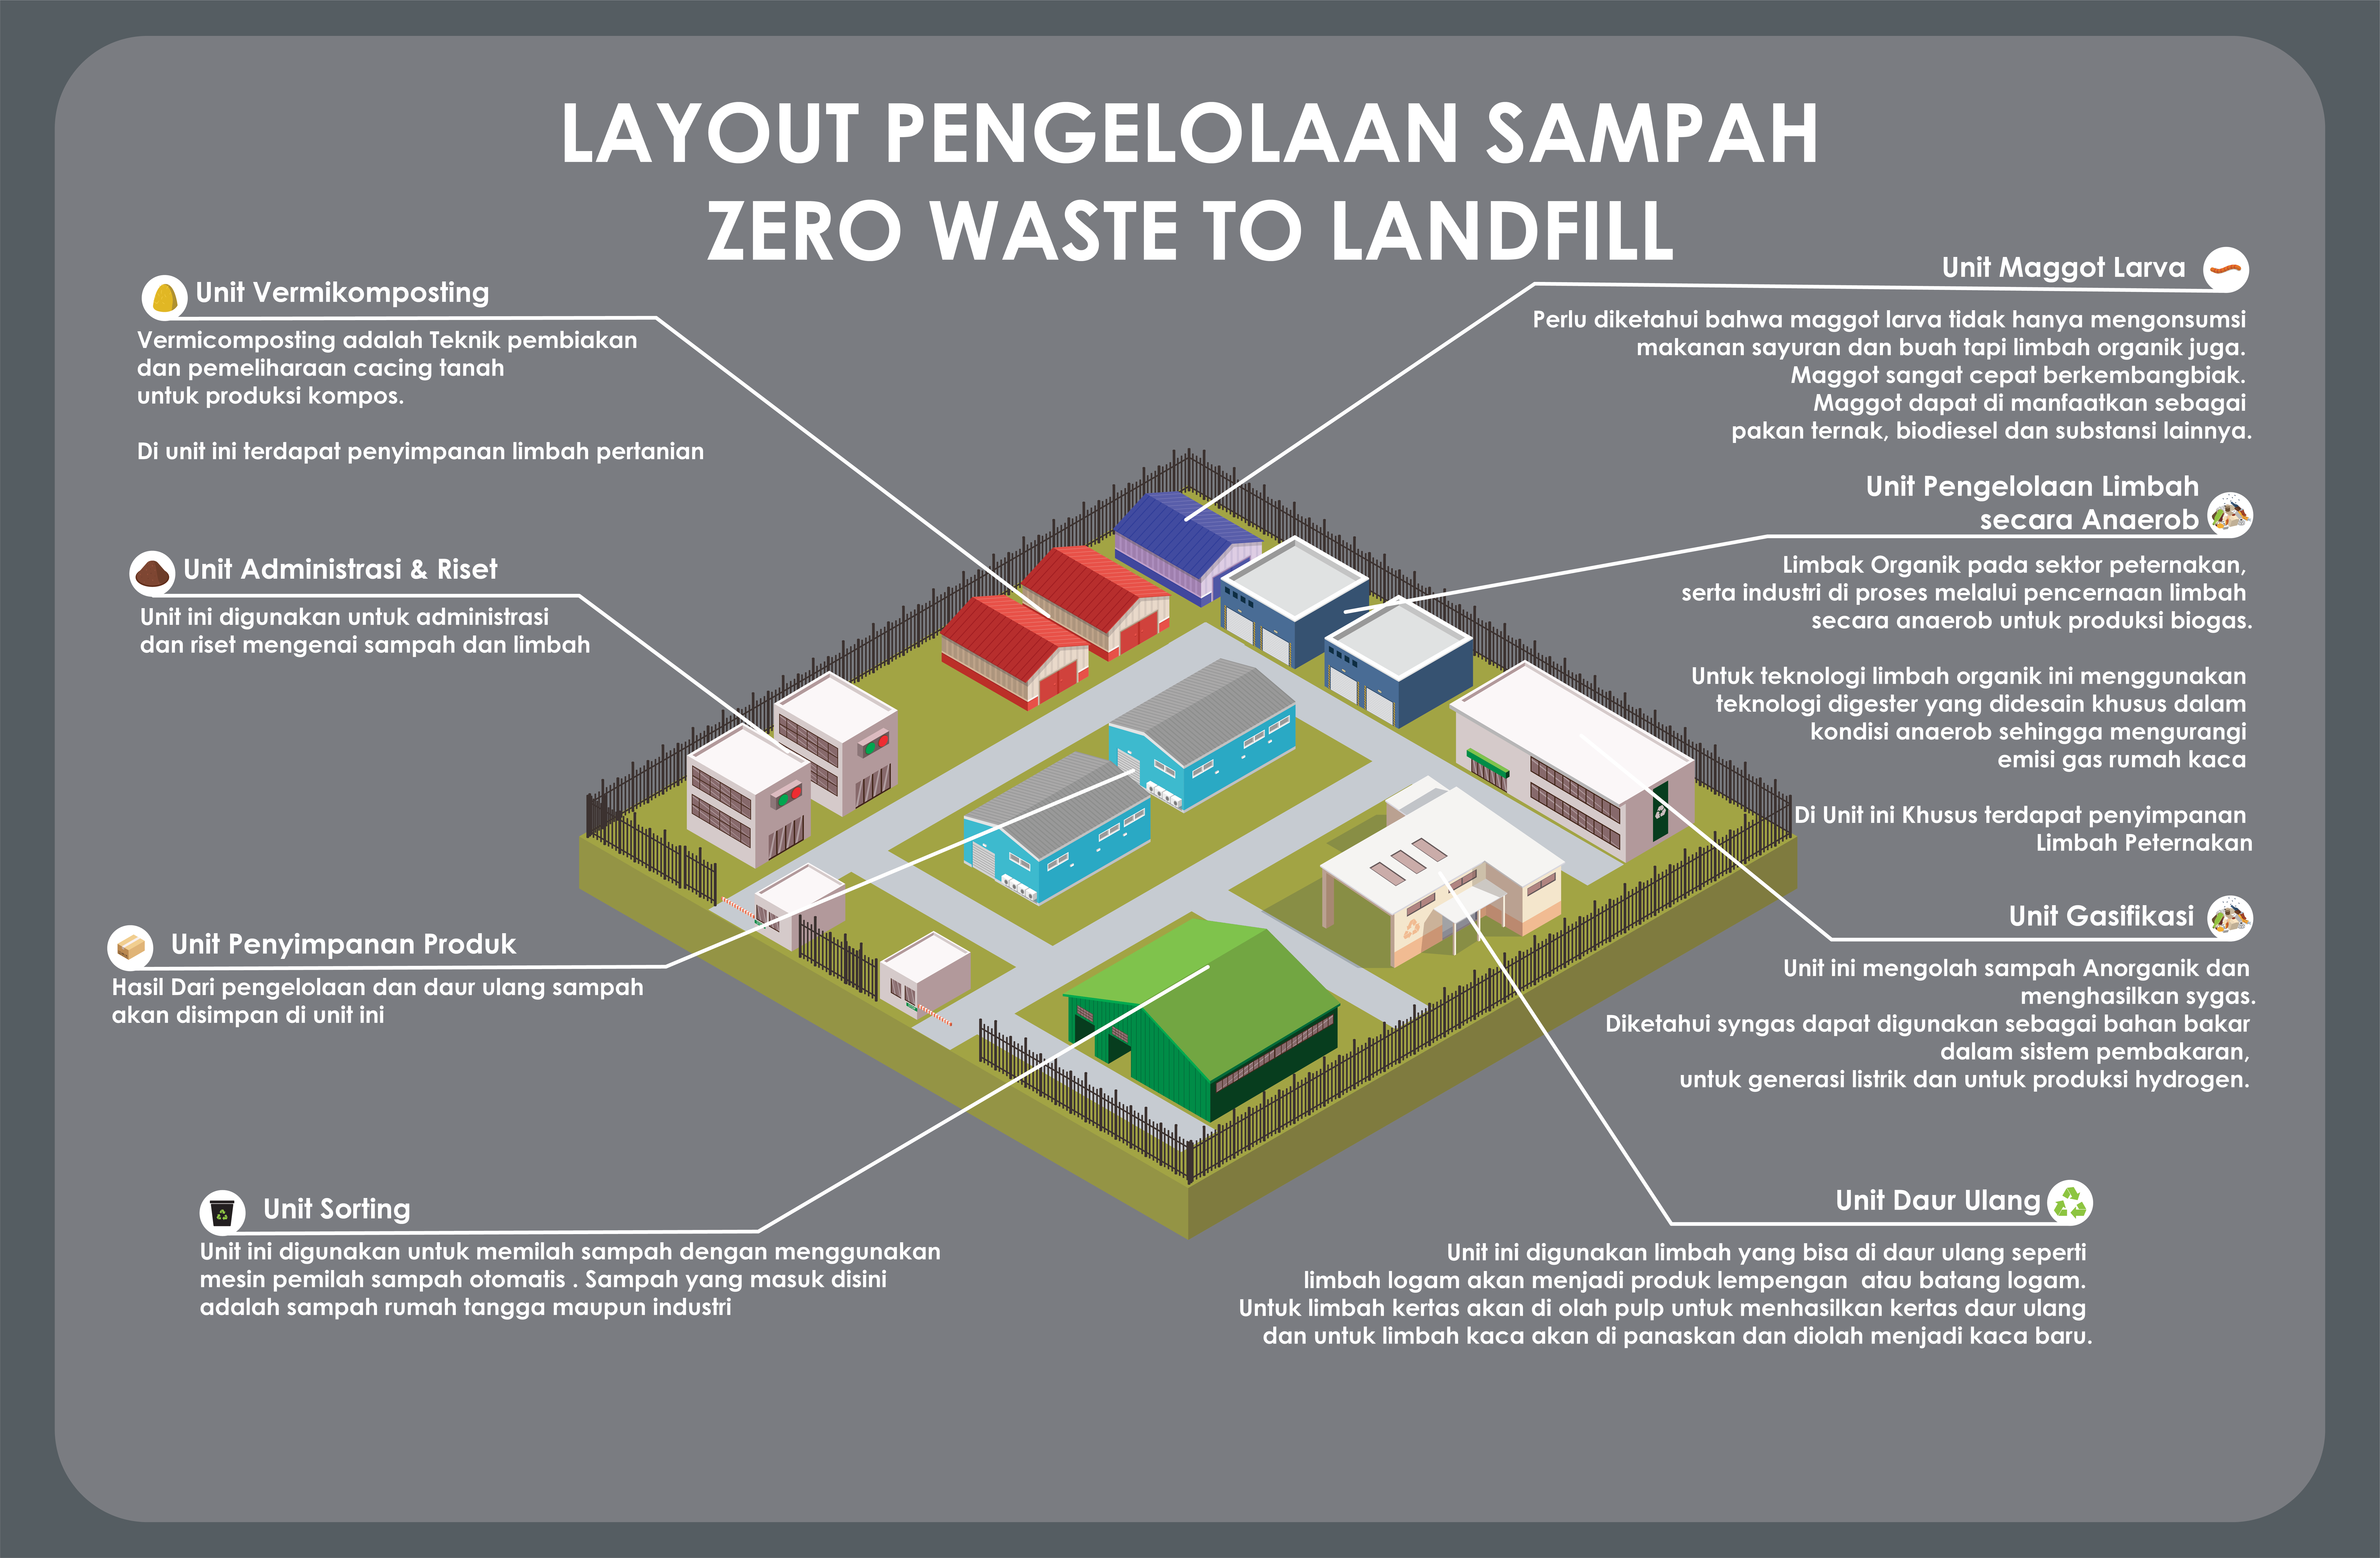 Wujudkan Pengelolaan Desa yang Berkelanjutan, Mahasiswa UTY Kembangkan Konsep Zero Waste to Landfill Melalui Program PKM